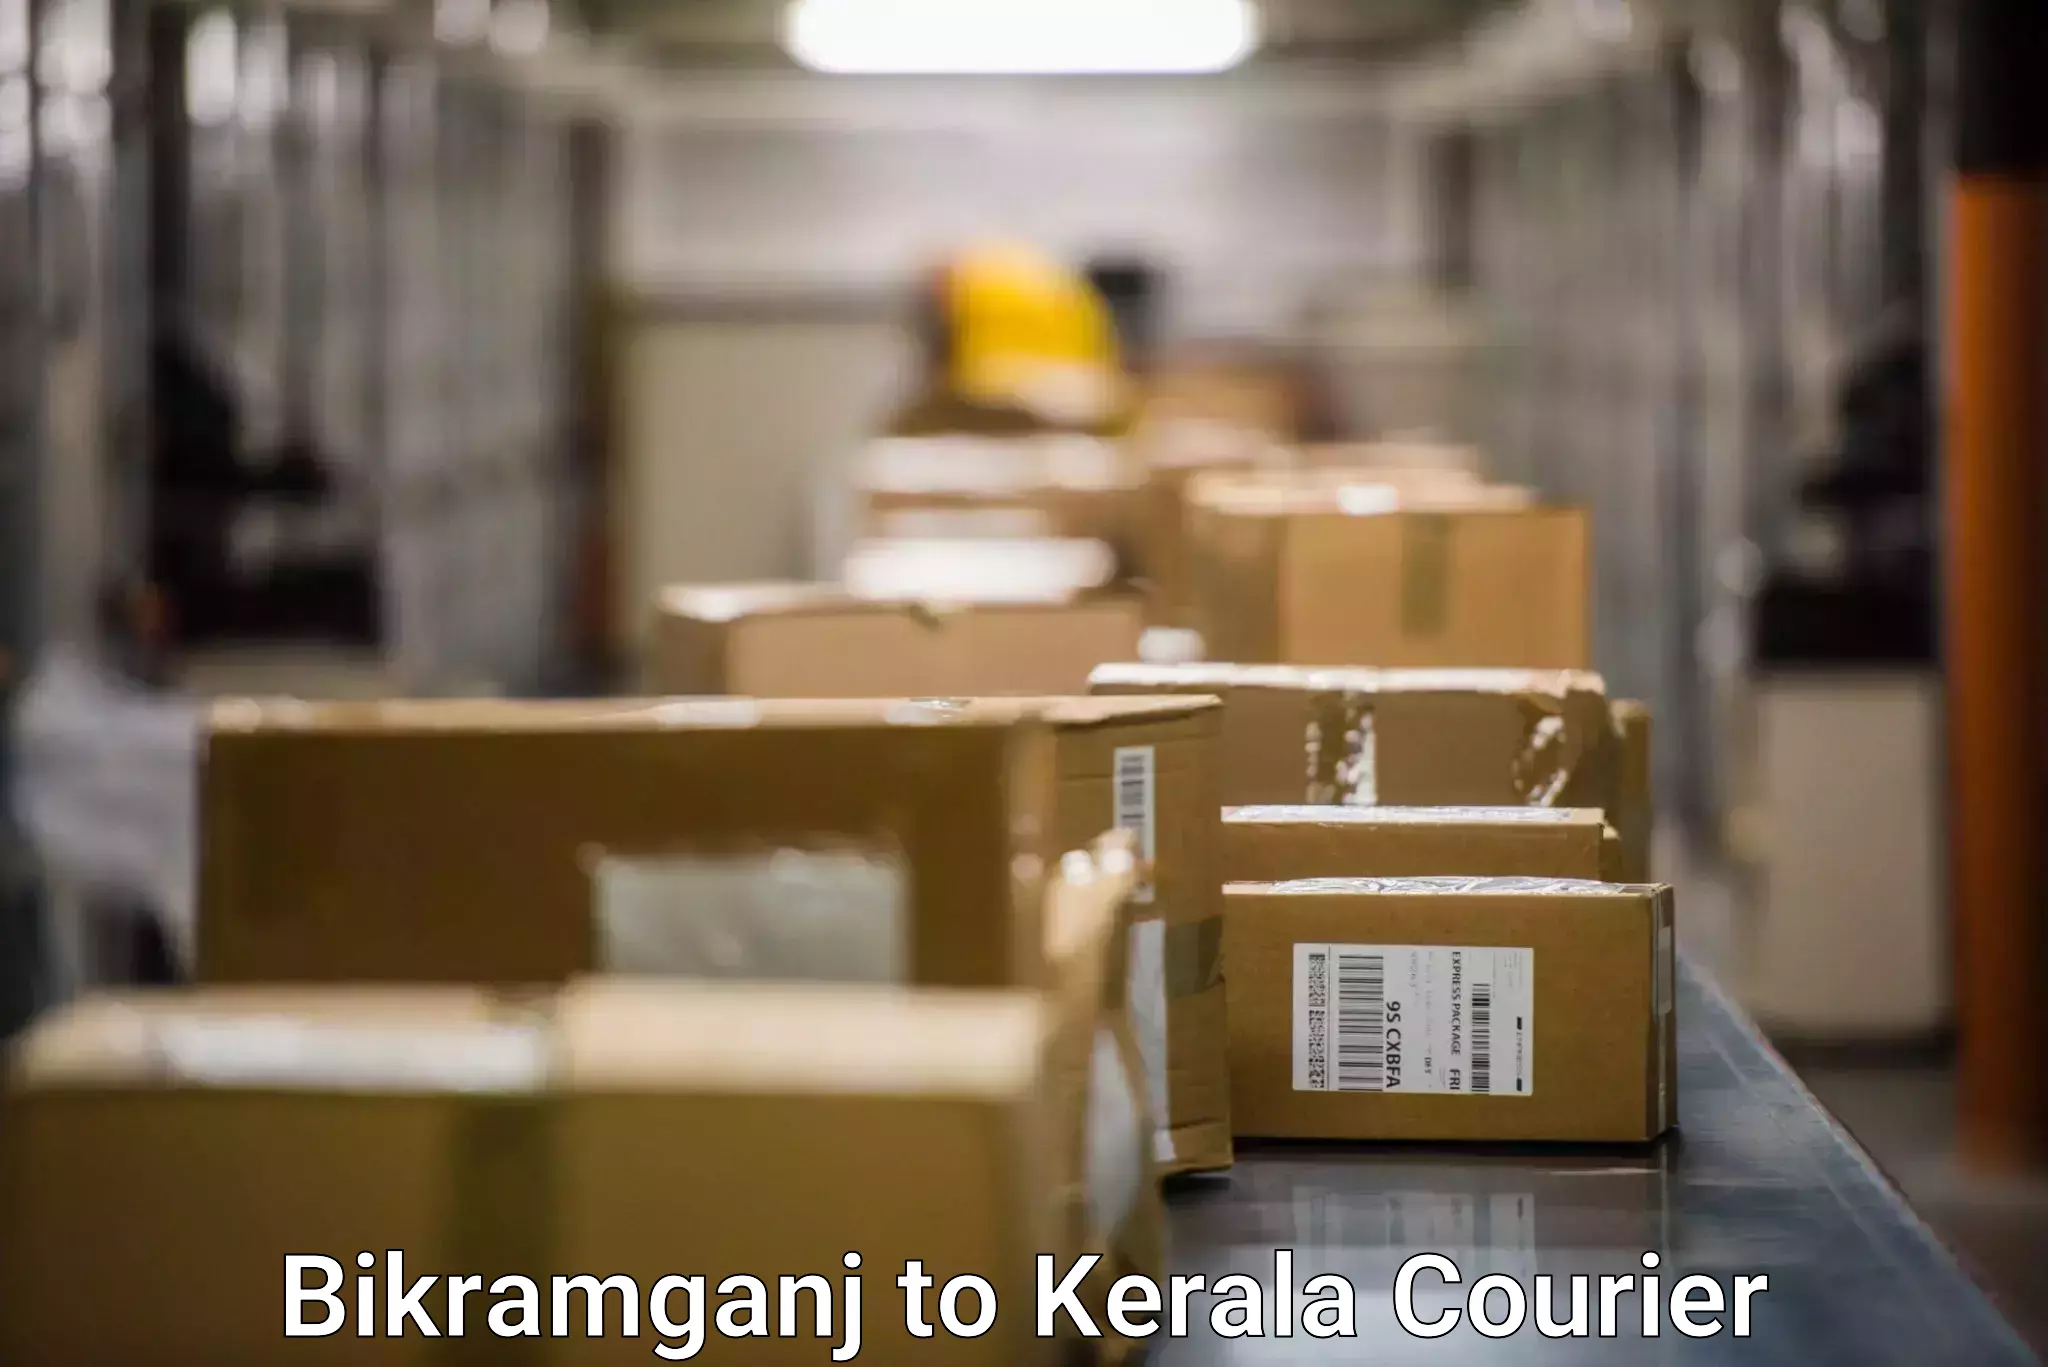 Nationwide parcel services Bikramganj to Ponekkara